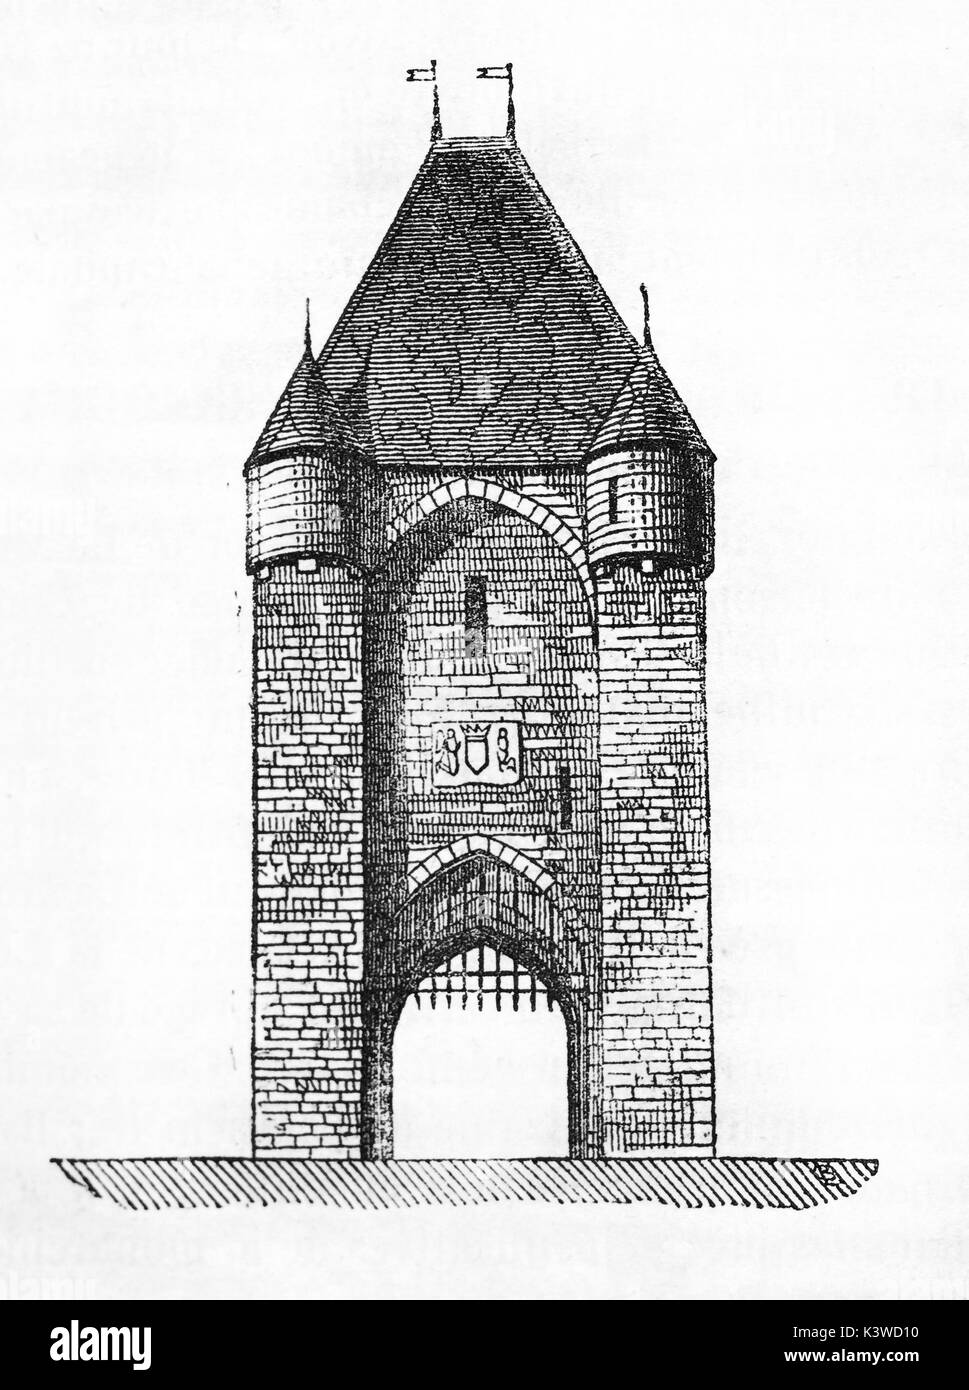 Vecchia illustrazione di Moret-sur-Loing gate, Seine et Marne, Ile-de-France. Da autore non identificato, pubblicato il Magasin pittoresco, Parigi, 1841 Foto Stock